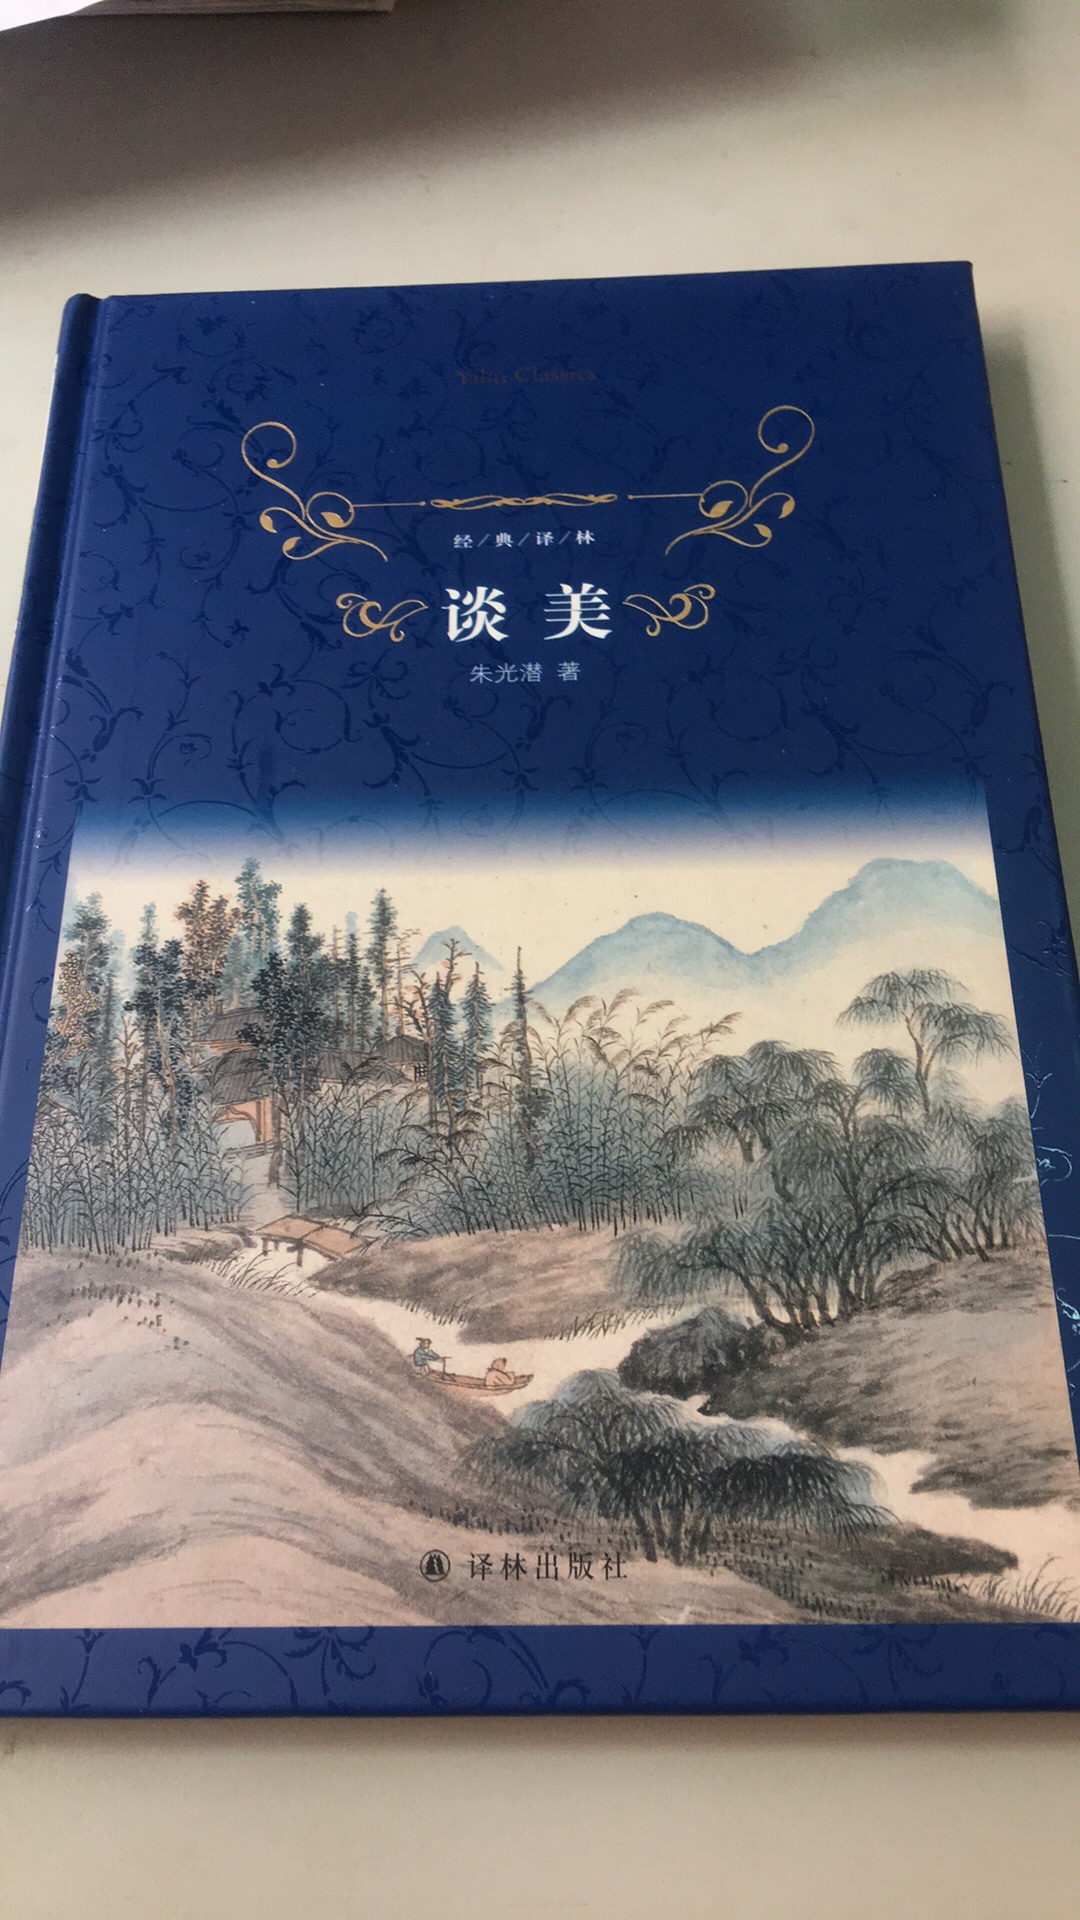 学校老师推荐的书，朱光潜先生的早期作品，很喜欢，封面也很美。